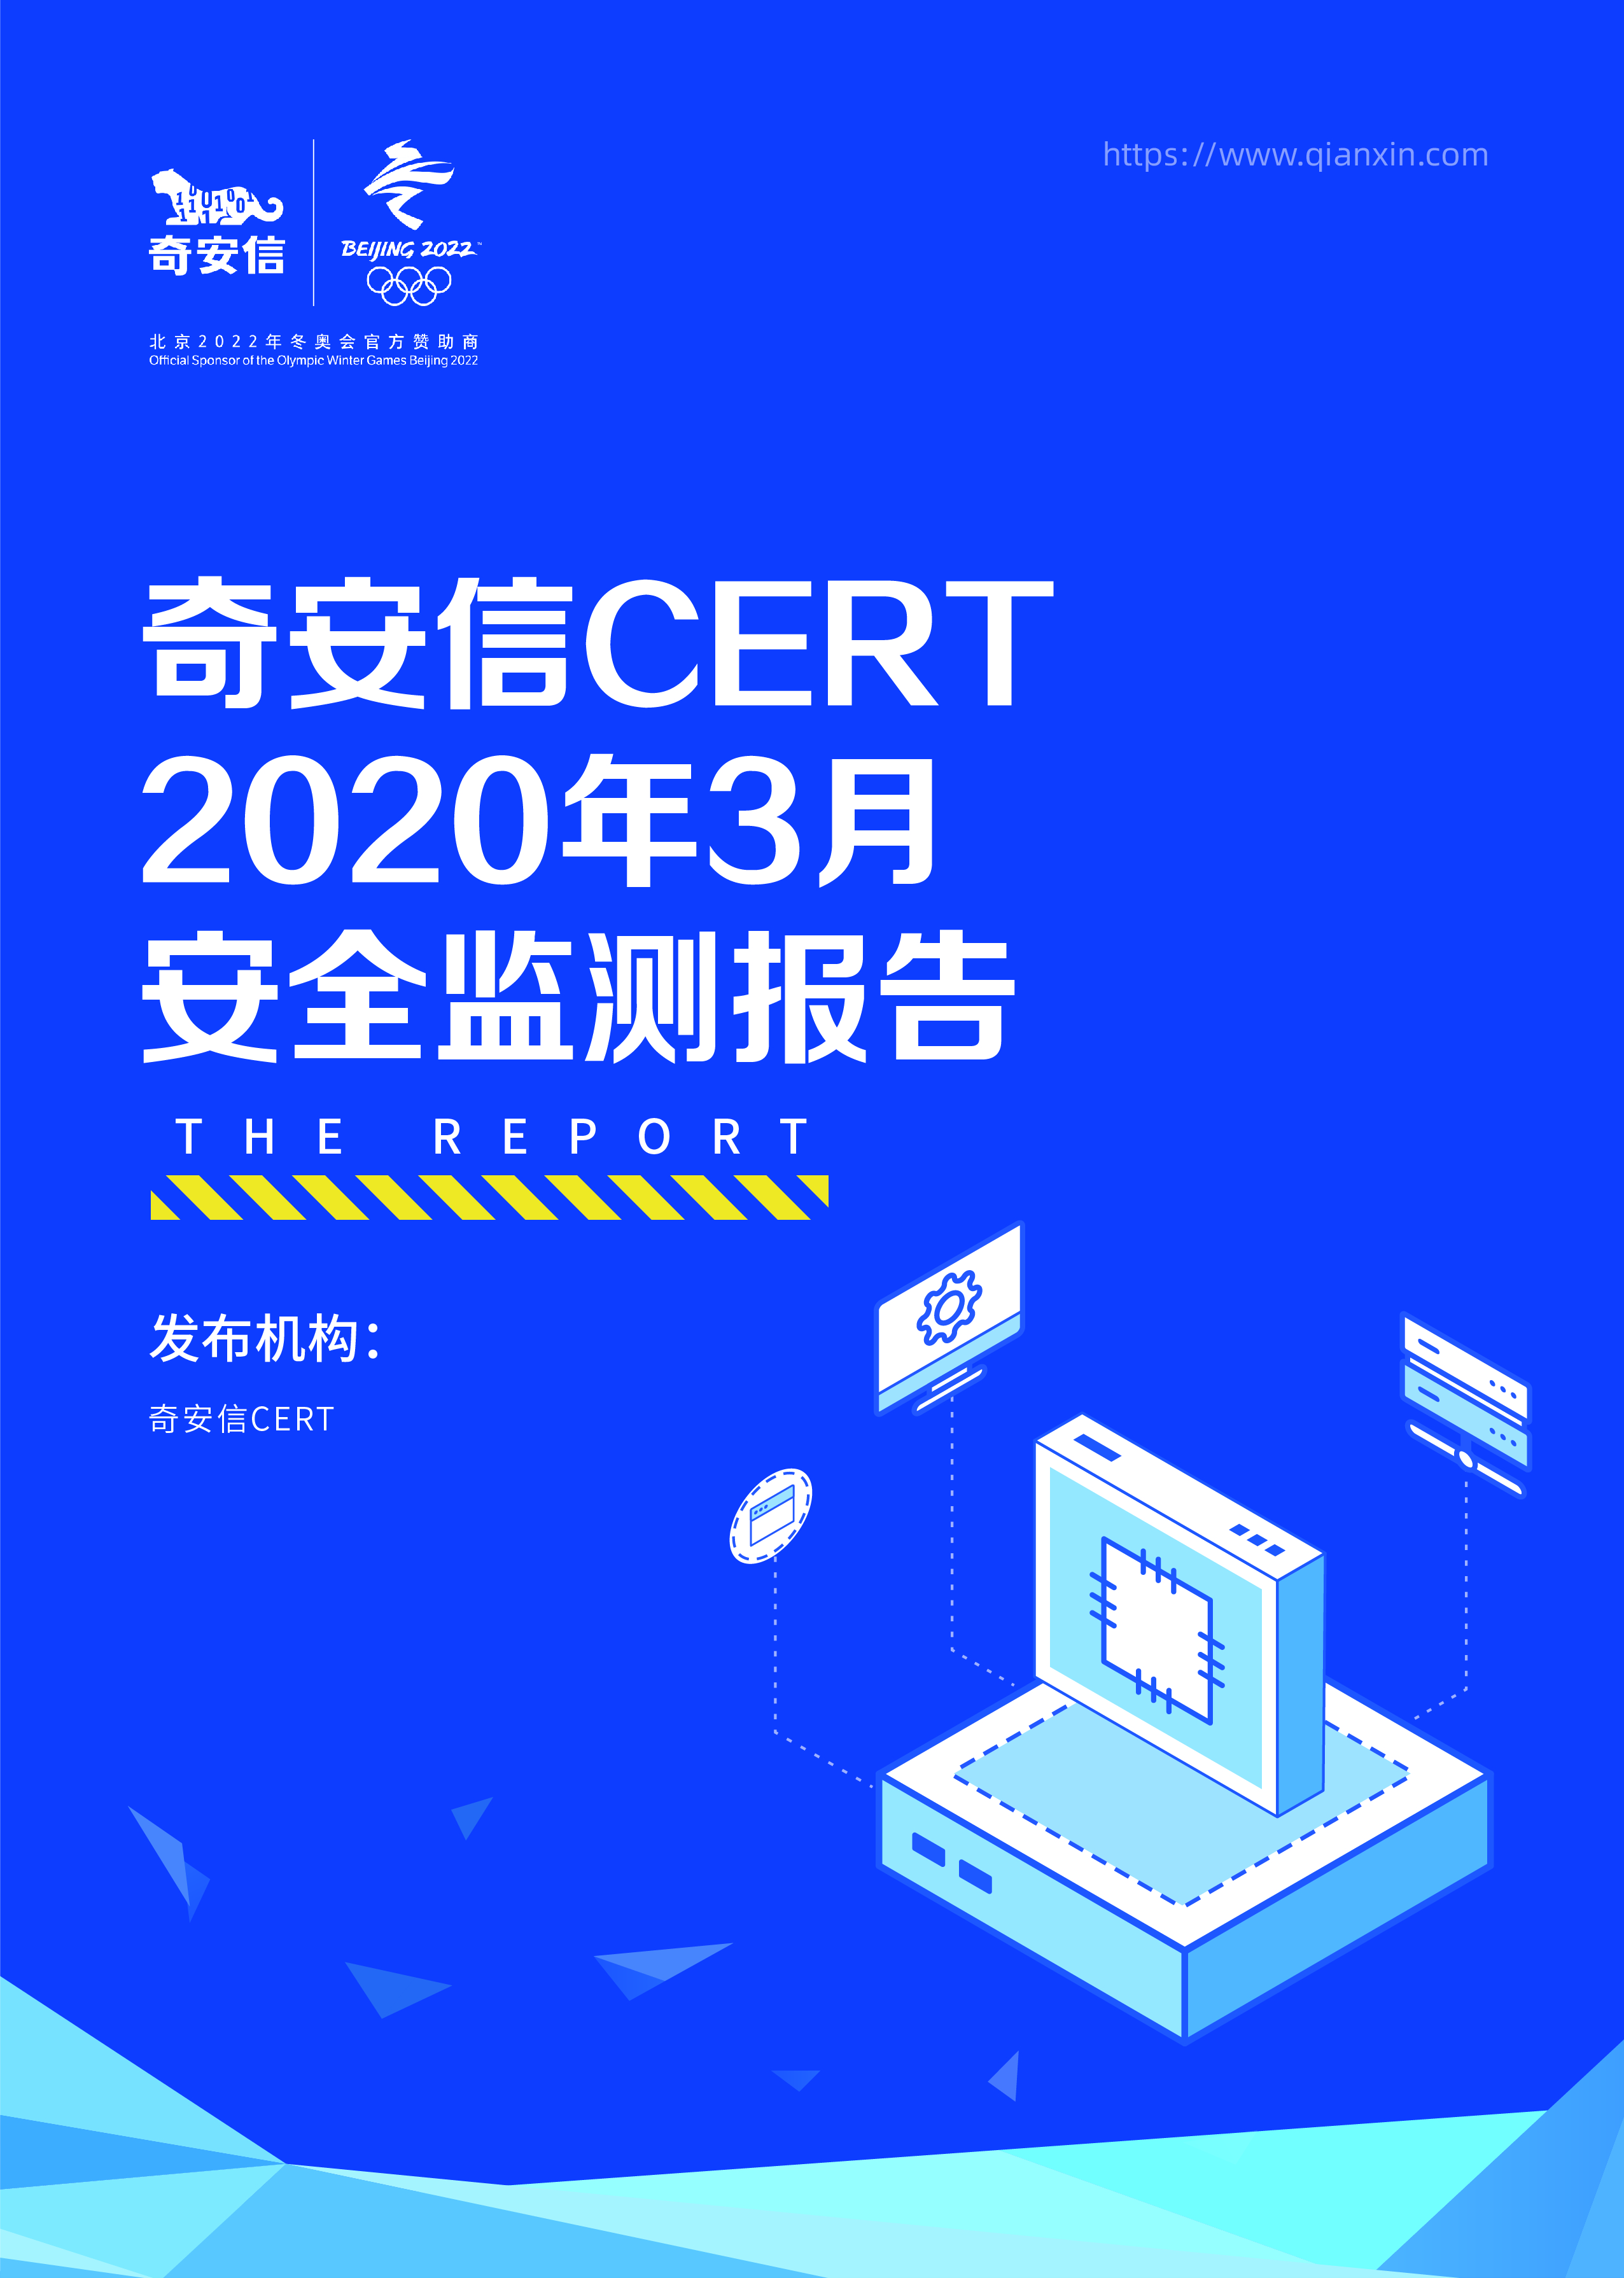 奇安信 CERT 2020年3月安全监测报告